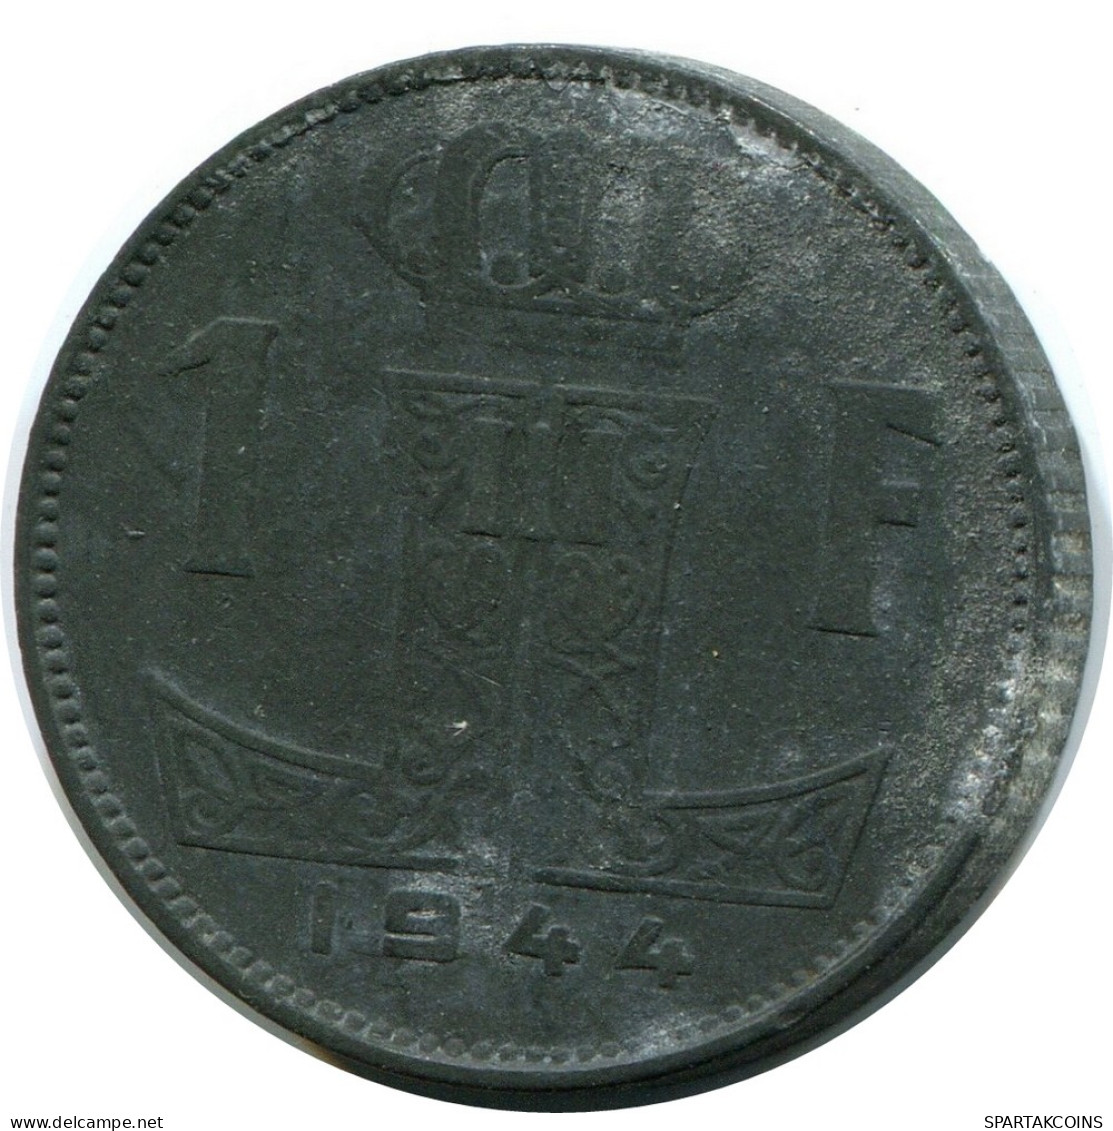 1 FRANC 1944 BELGIUM Coin #AW914.U - 1 Frank